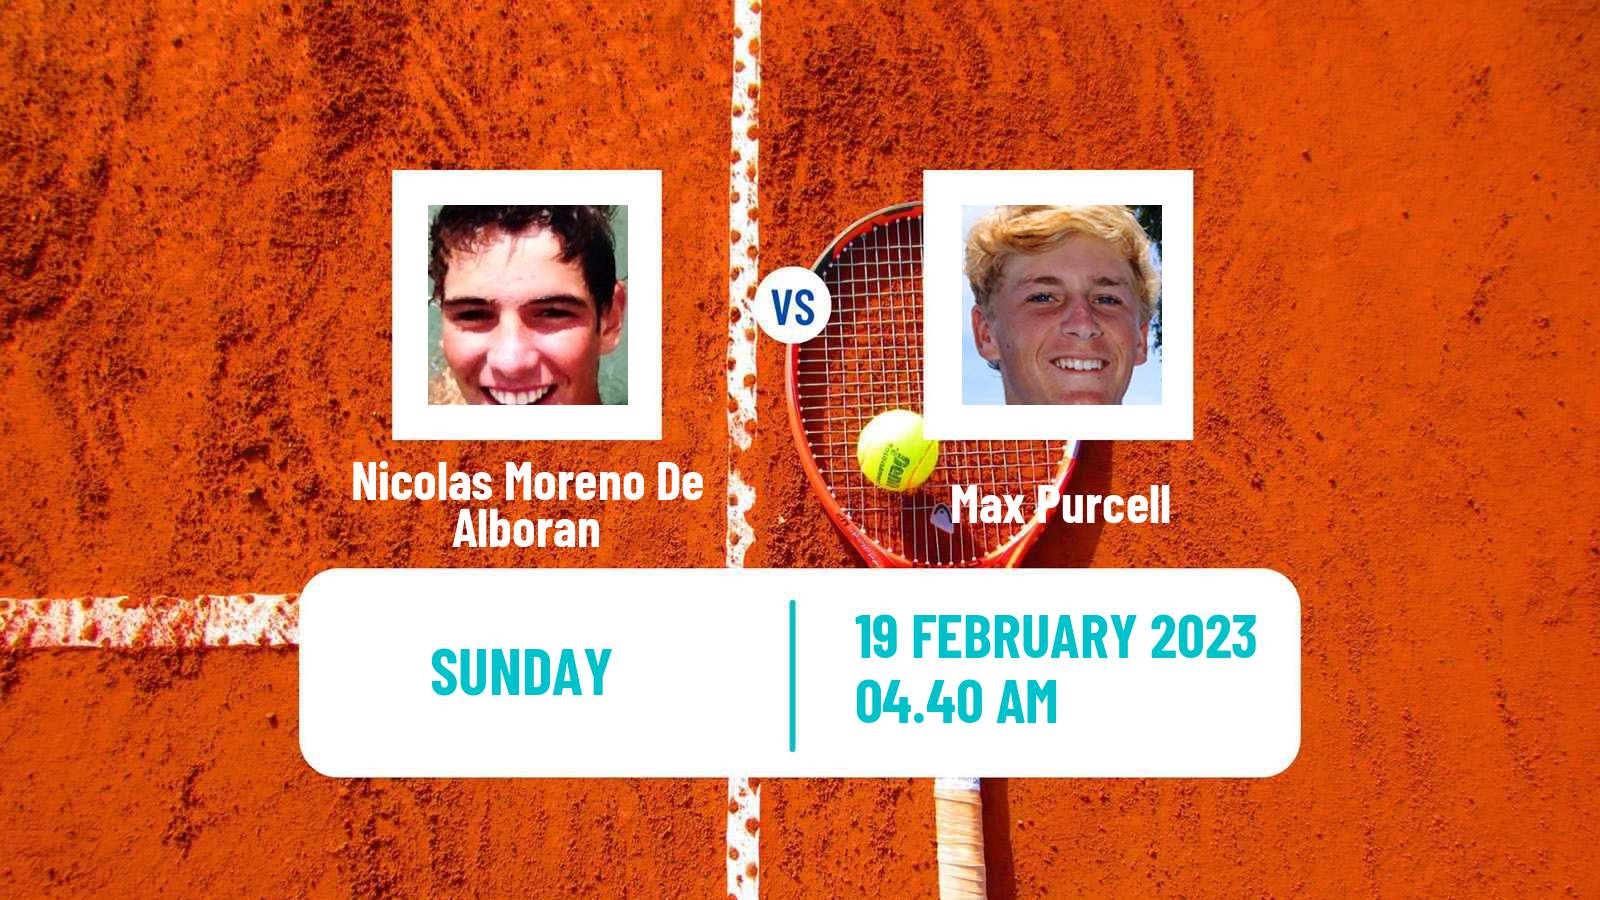 Tennis ATP Challenger Nicolas Moreno De Alboran - Max Purcell